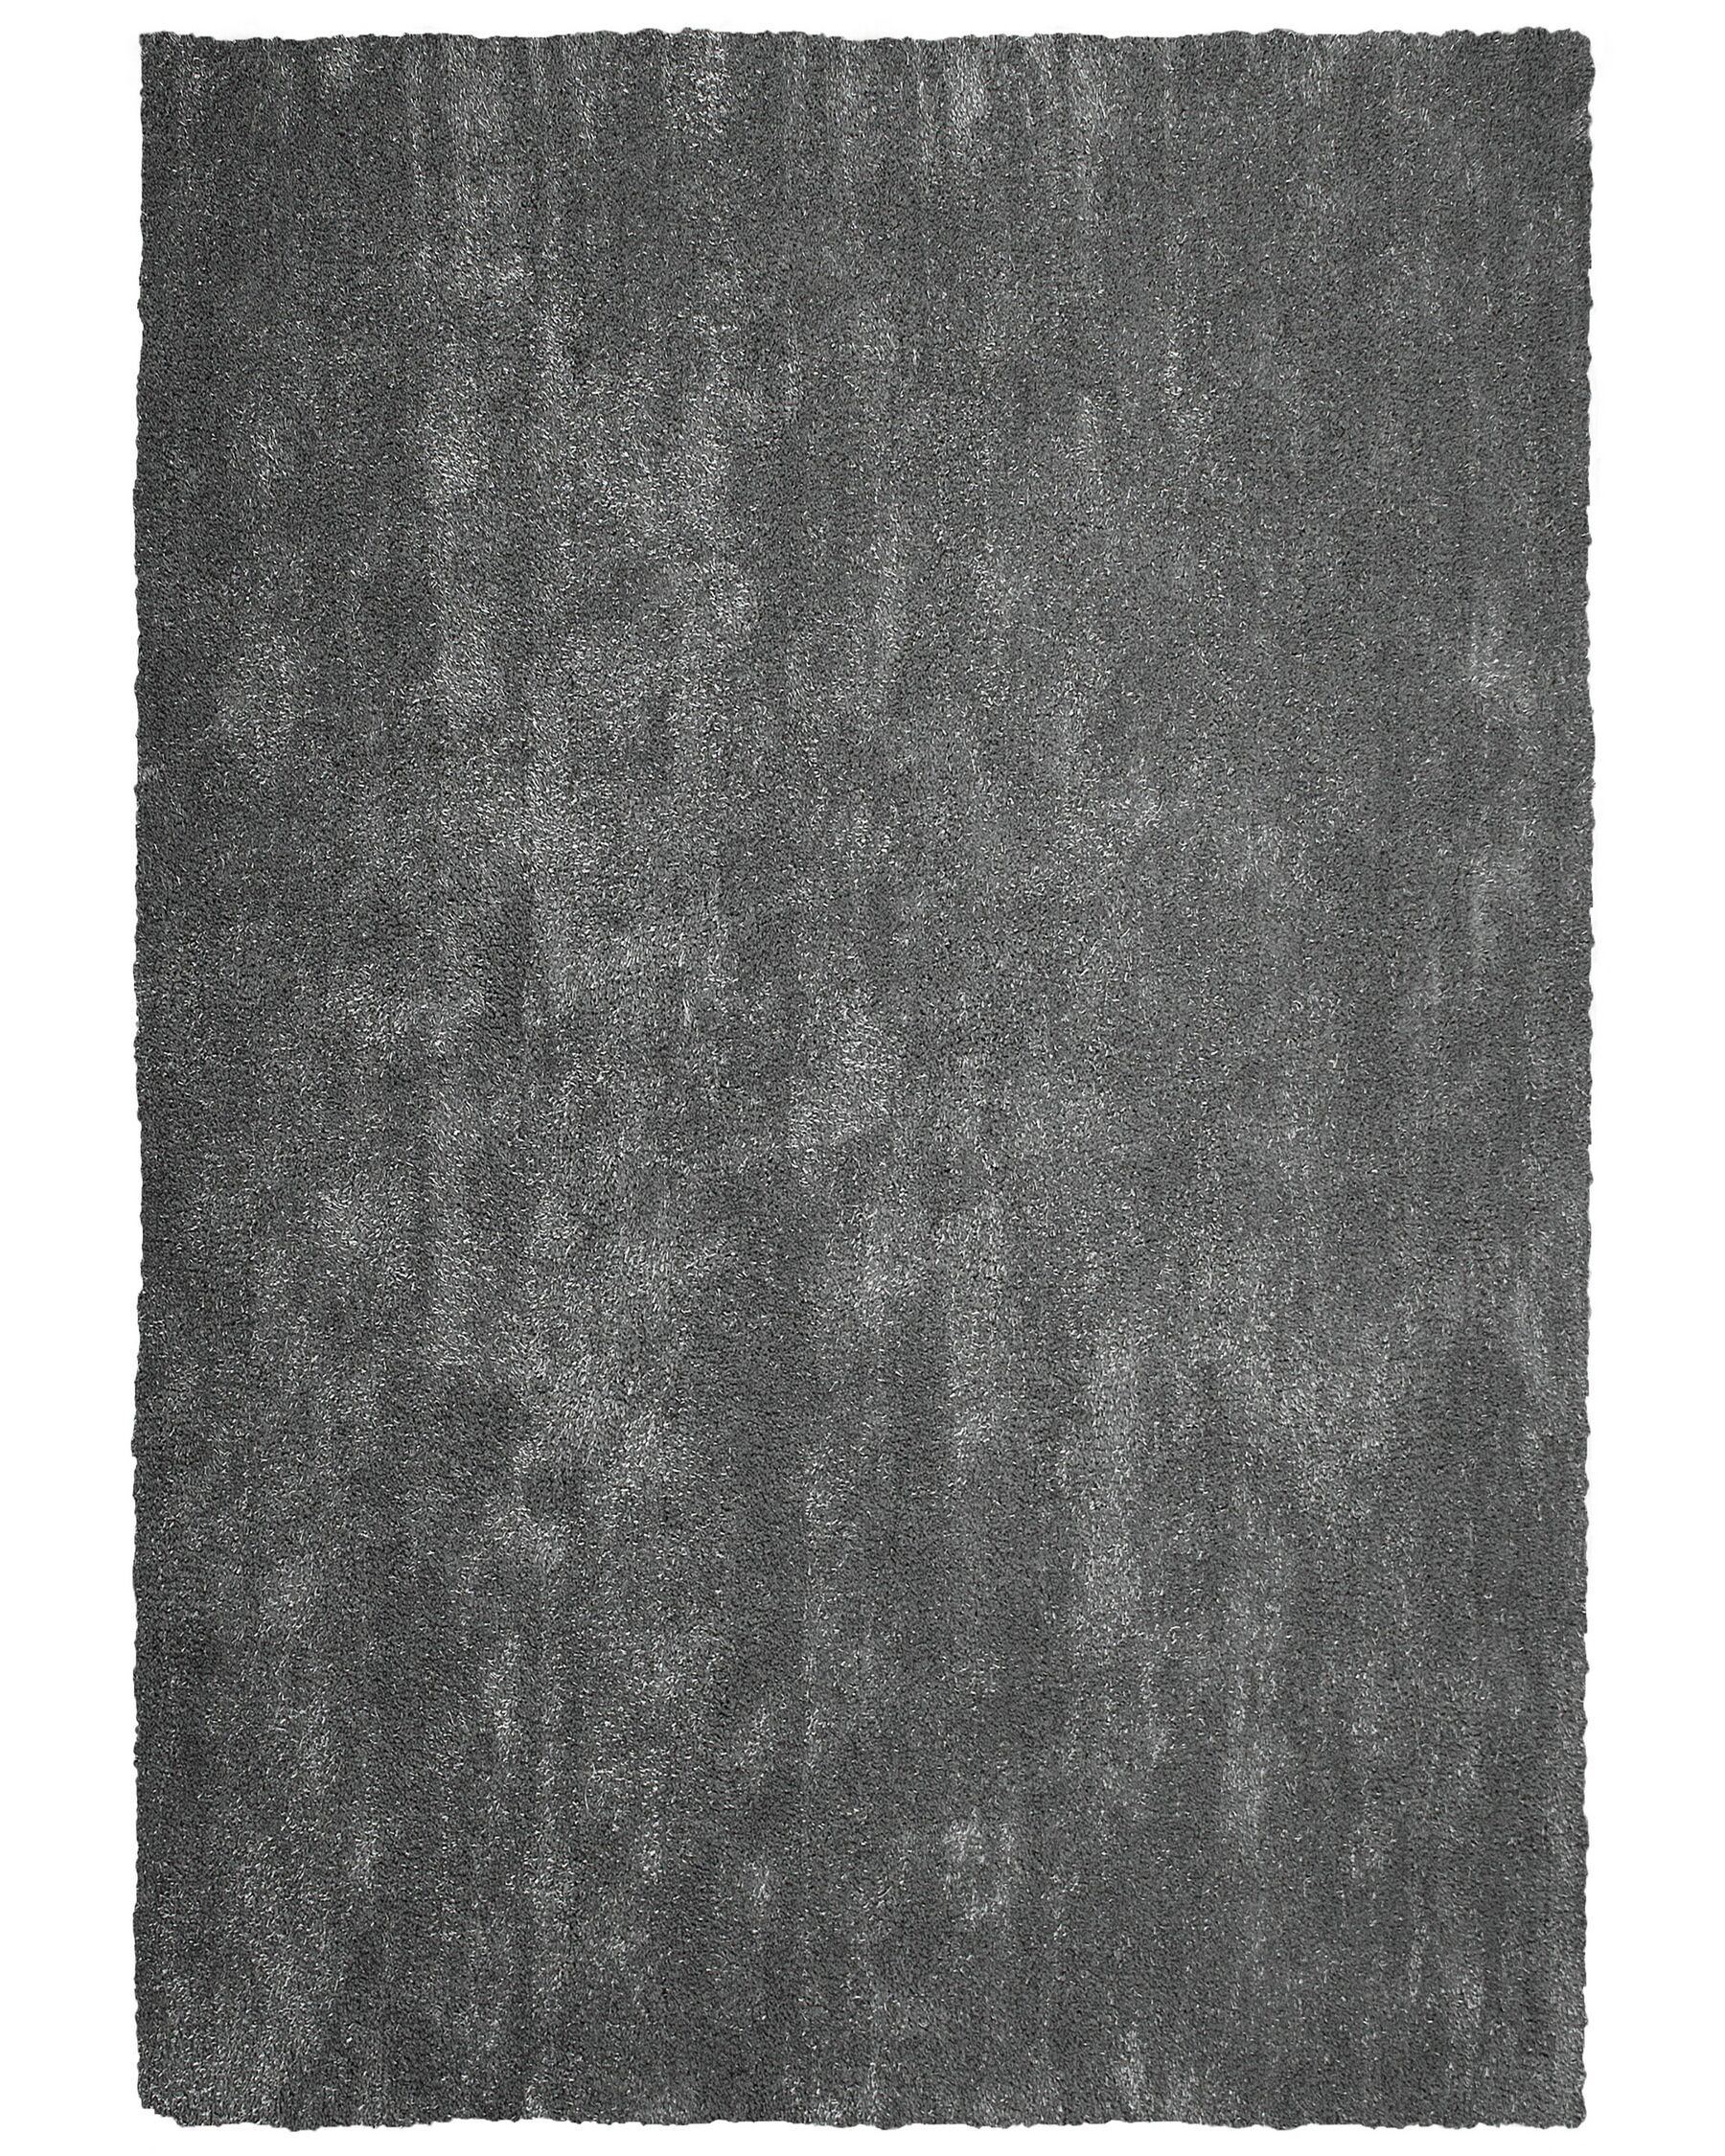 Tappeto shaggy grigio scuro 160 x 230 cm DEMRE_683553